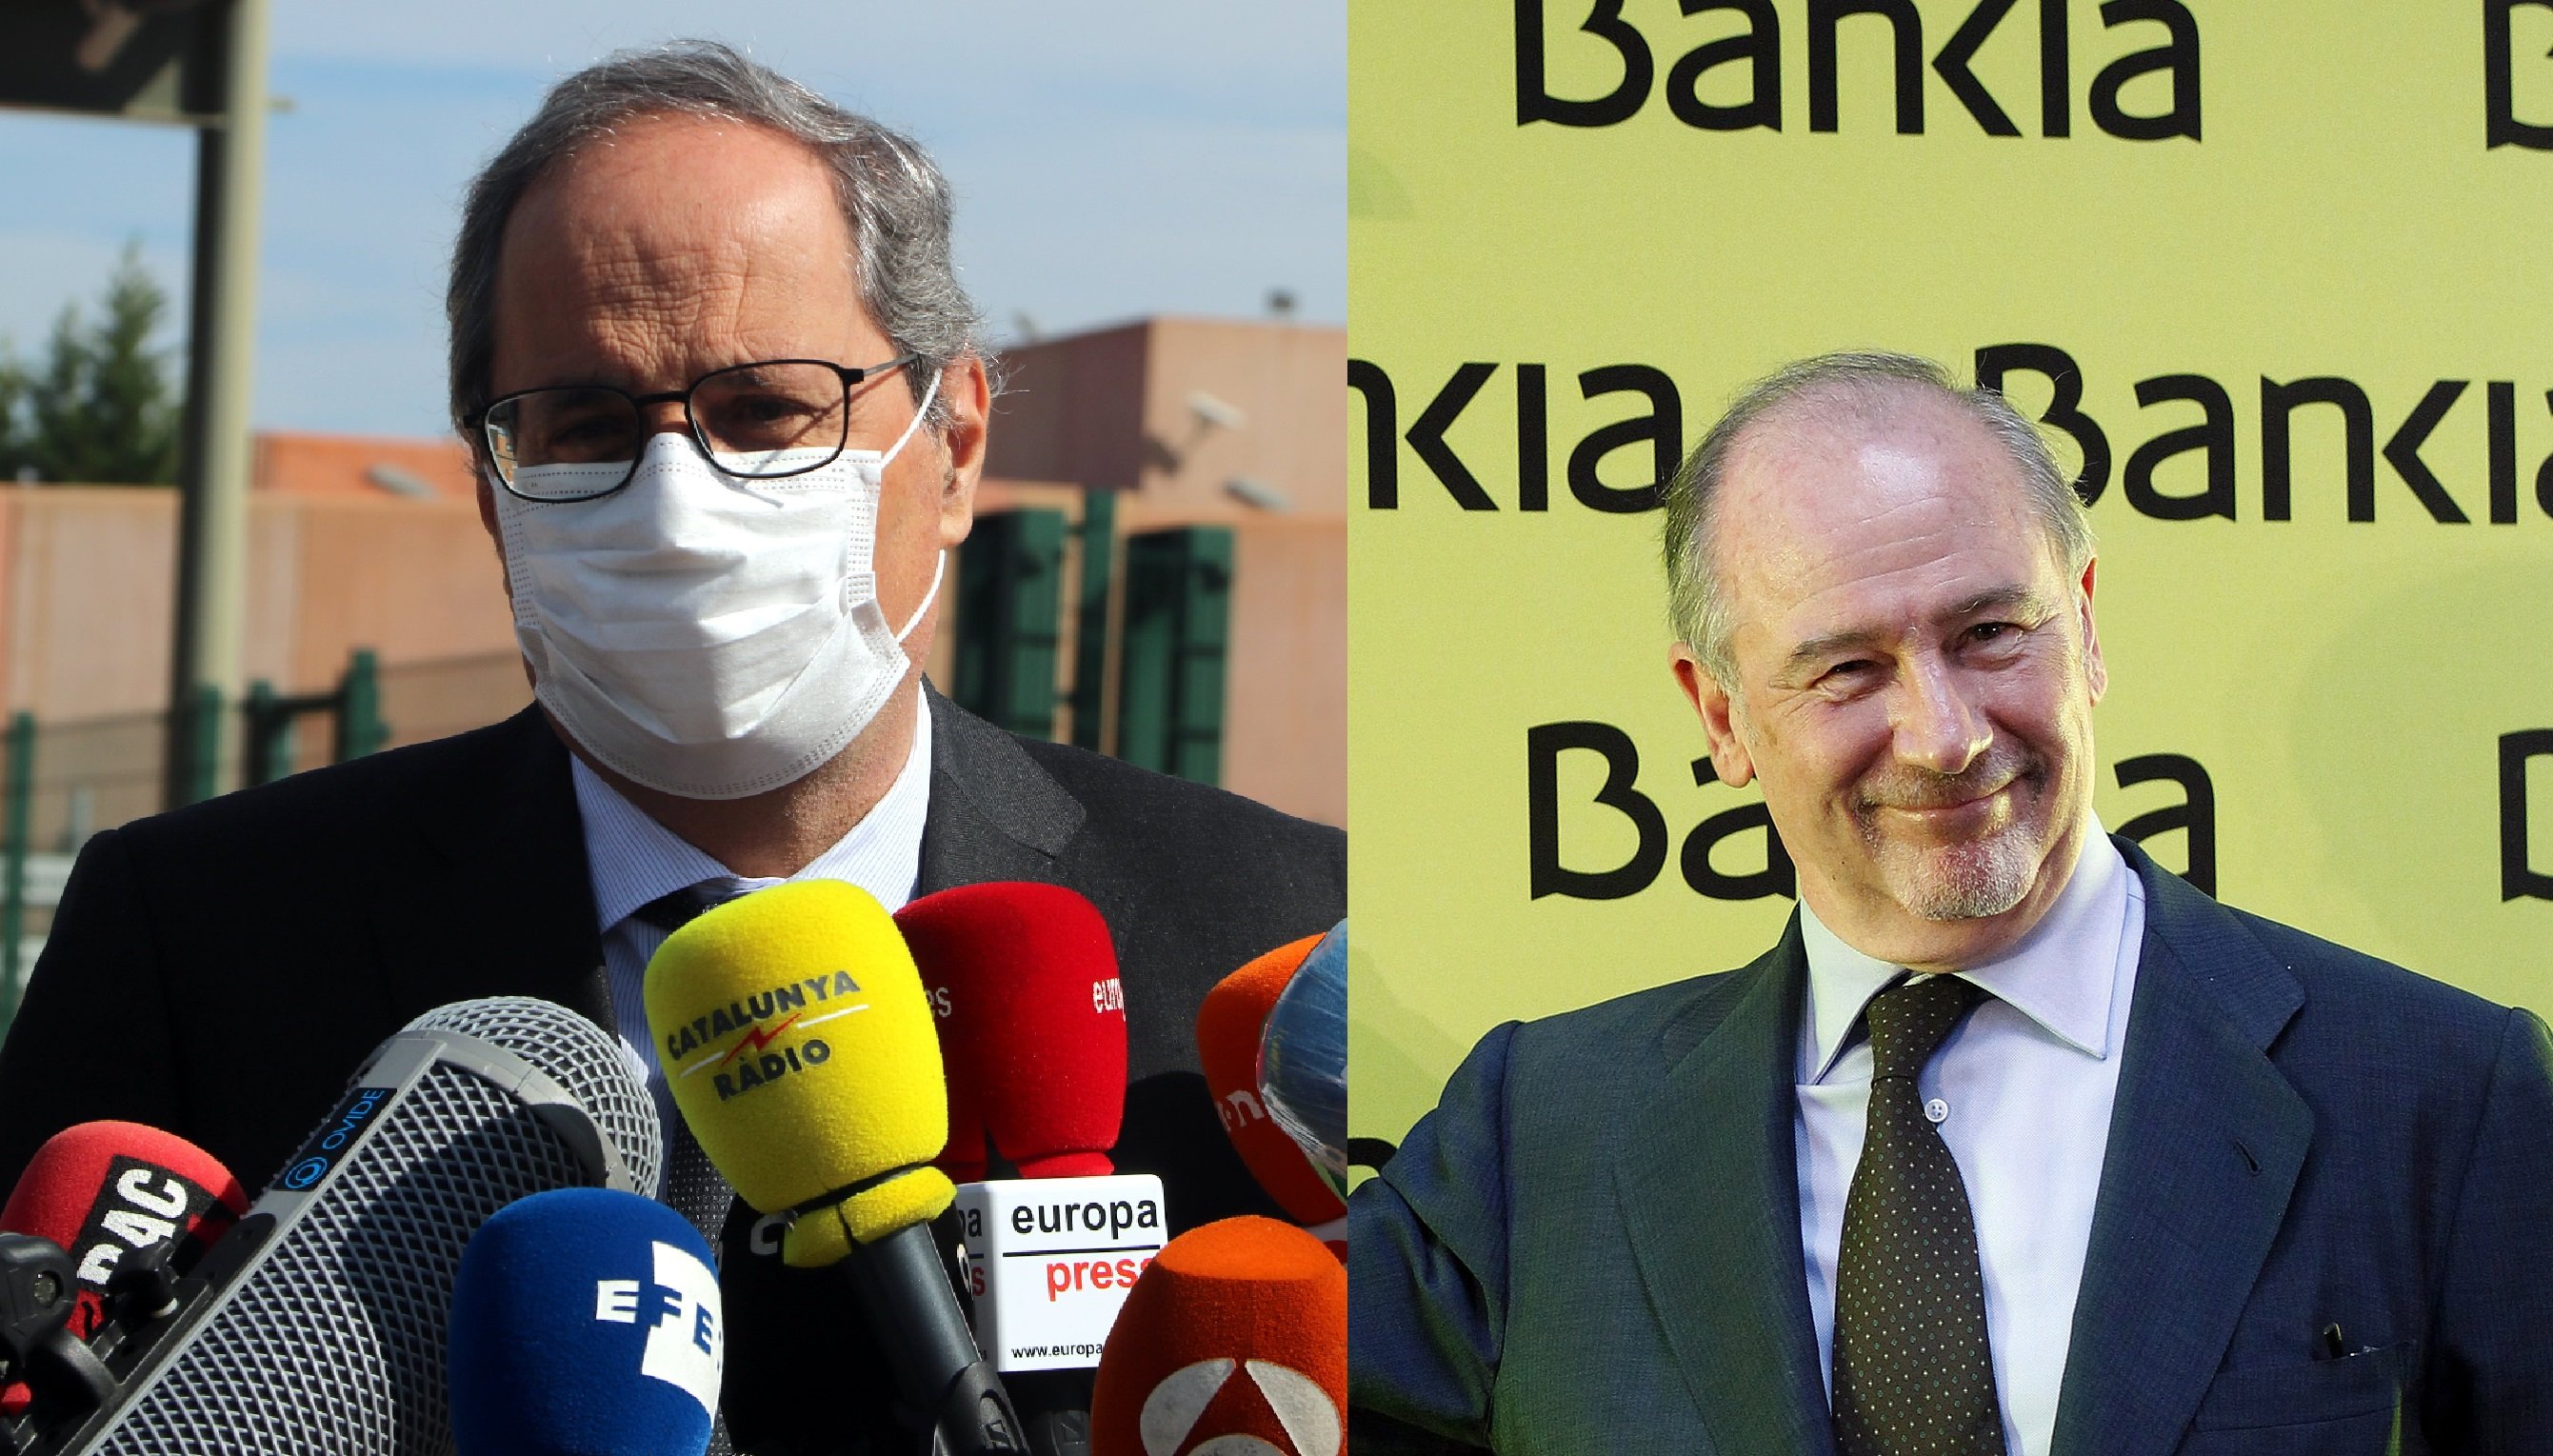 Els polítics catalans denuncien la inhabilitació a Torra mentre absolen Rato